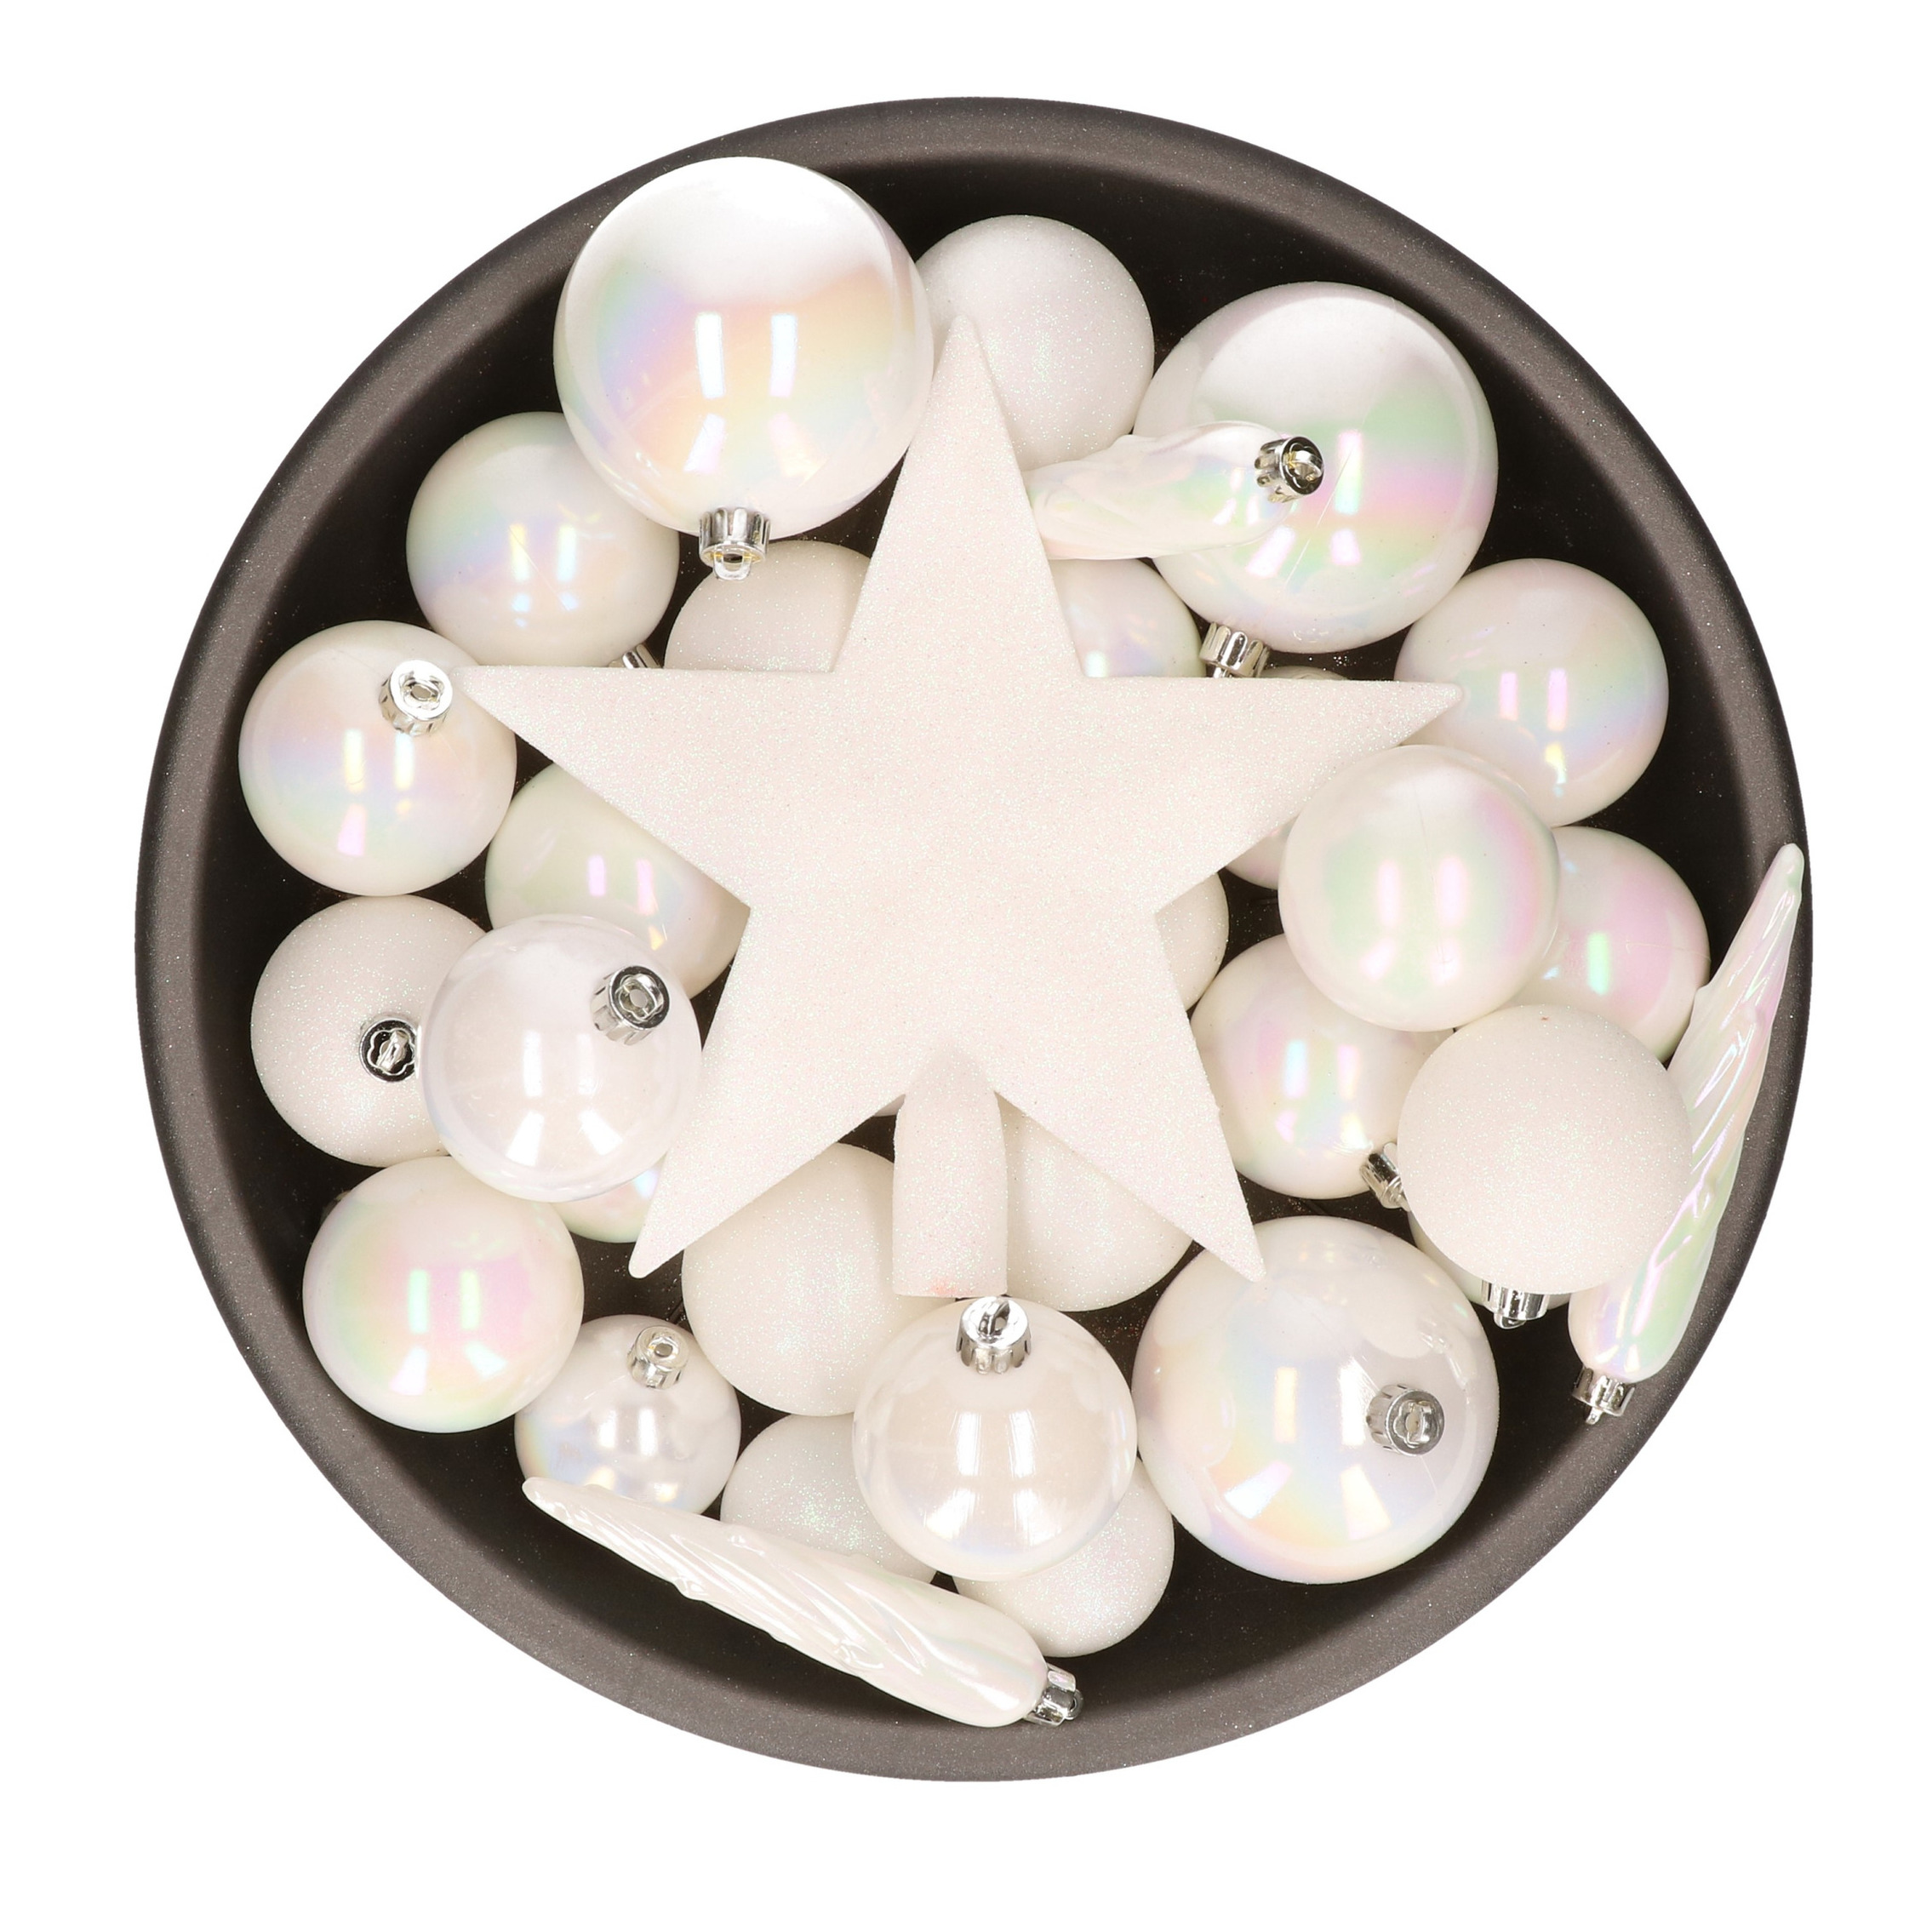 Set van 33x stuks kunststof kerstballen met ster piek parelmoer wit mix